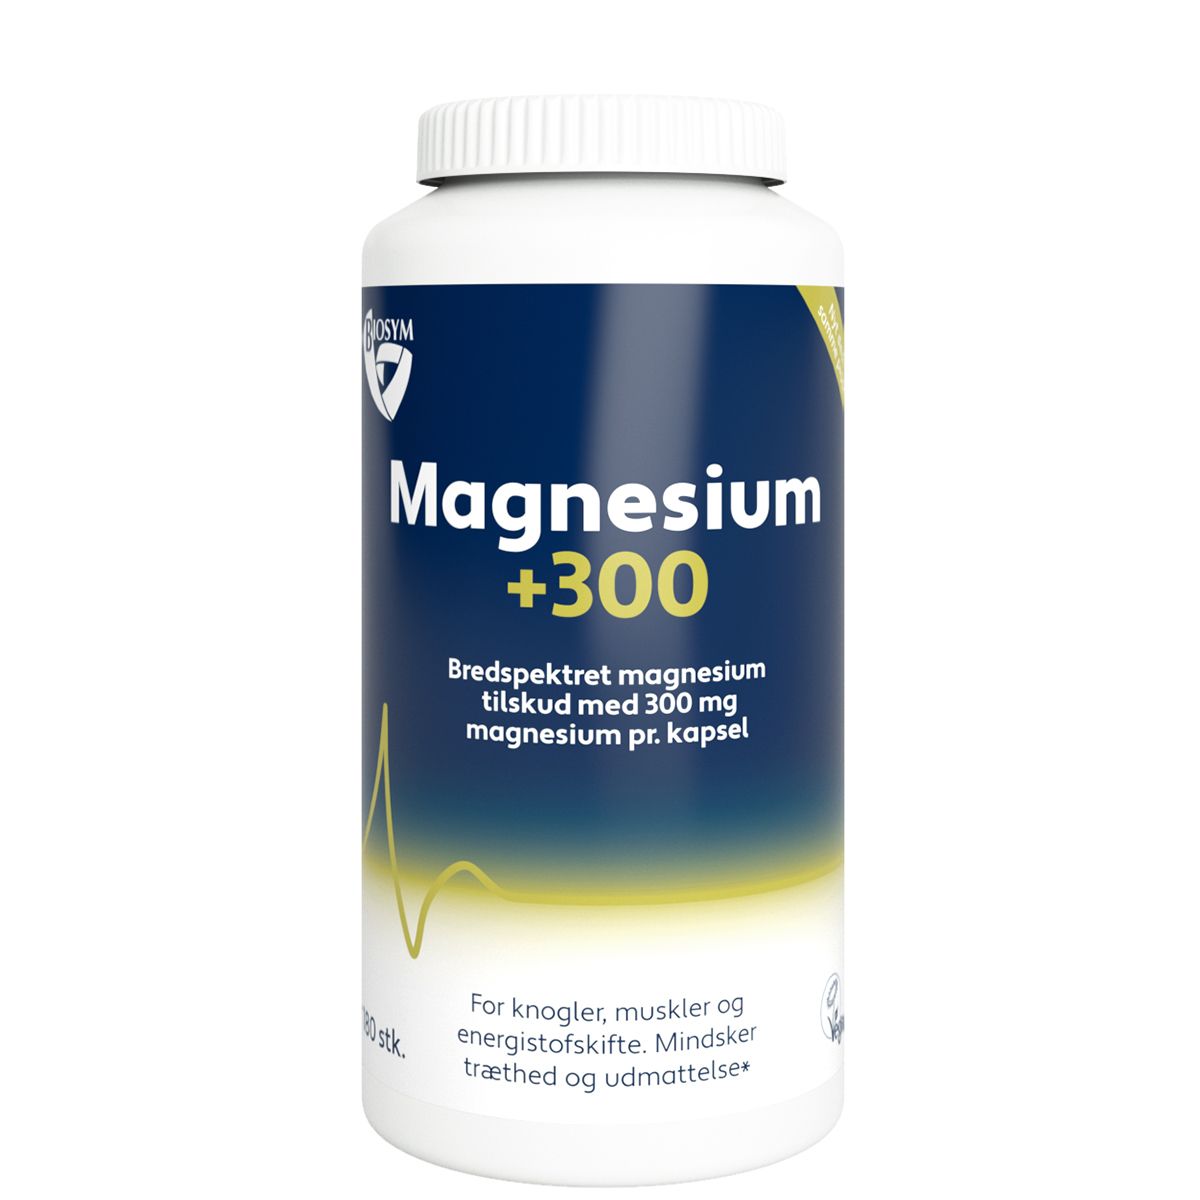 Køb Biosym Magnesium +300 - hos Med24.dk